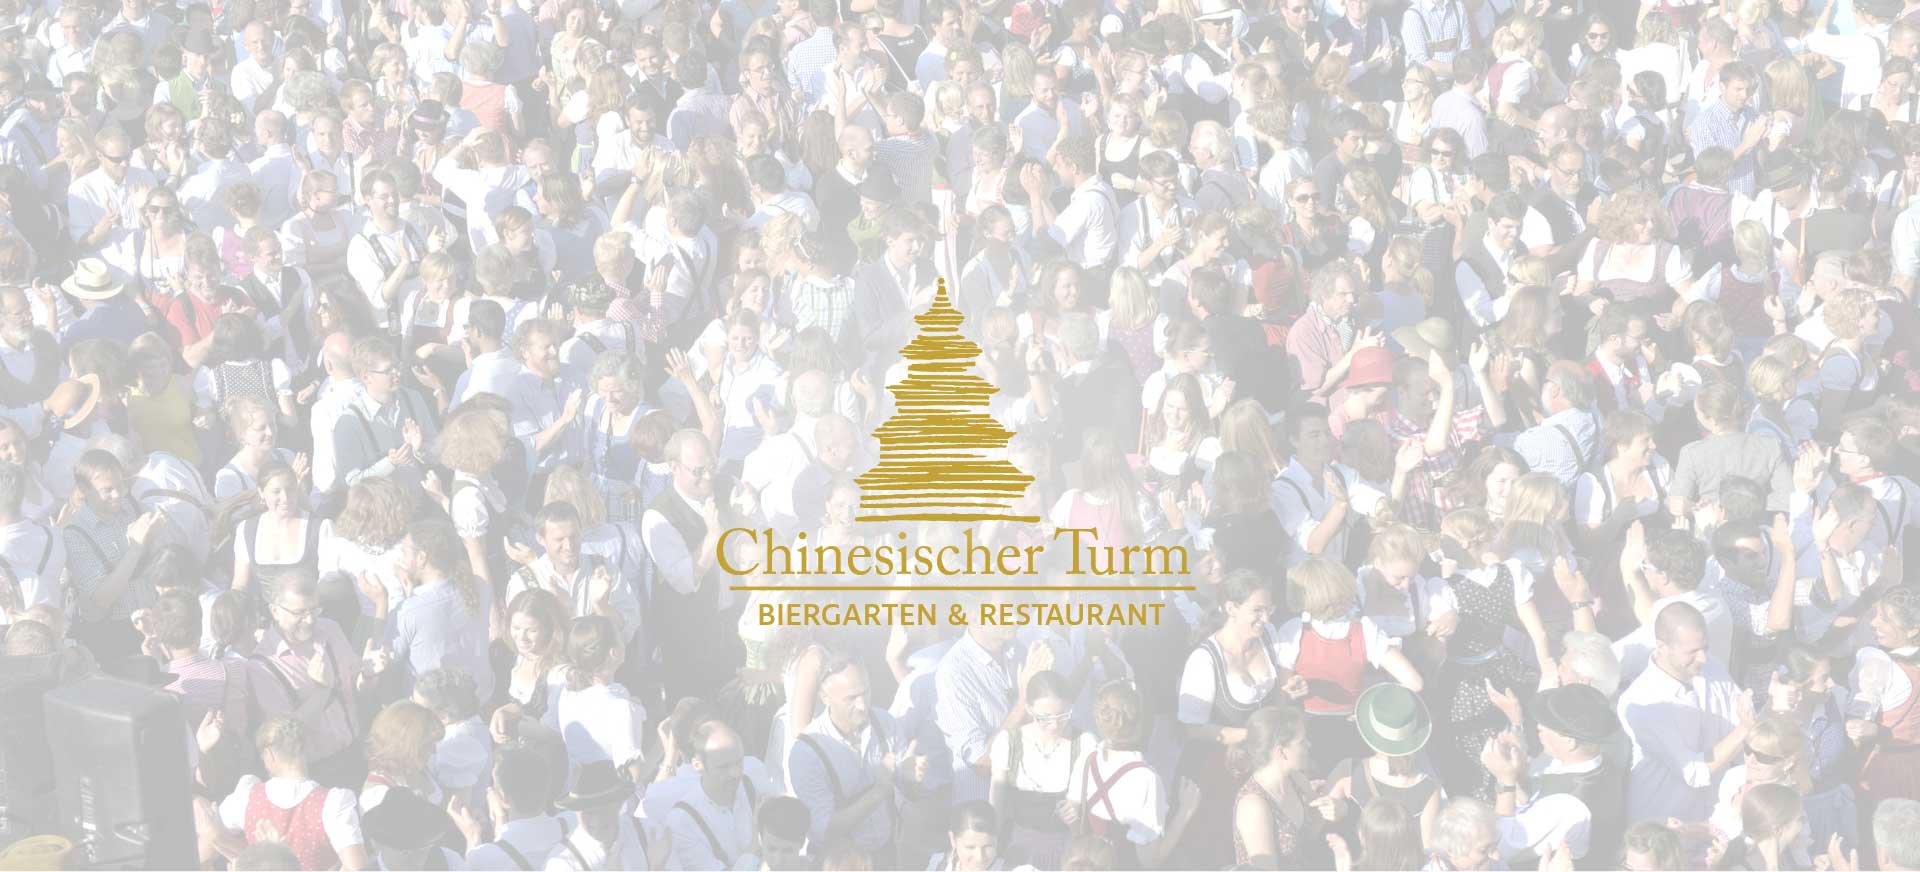 Headerbild der Webseite-Menschenmaße in Feierstimmung im Hintergrund, darauf transparente weisse Fläche mit Logo in gold des Biergarten und Restaurant des Chinesischen Turm